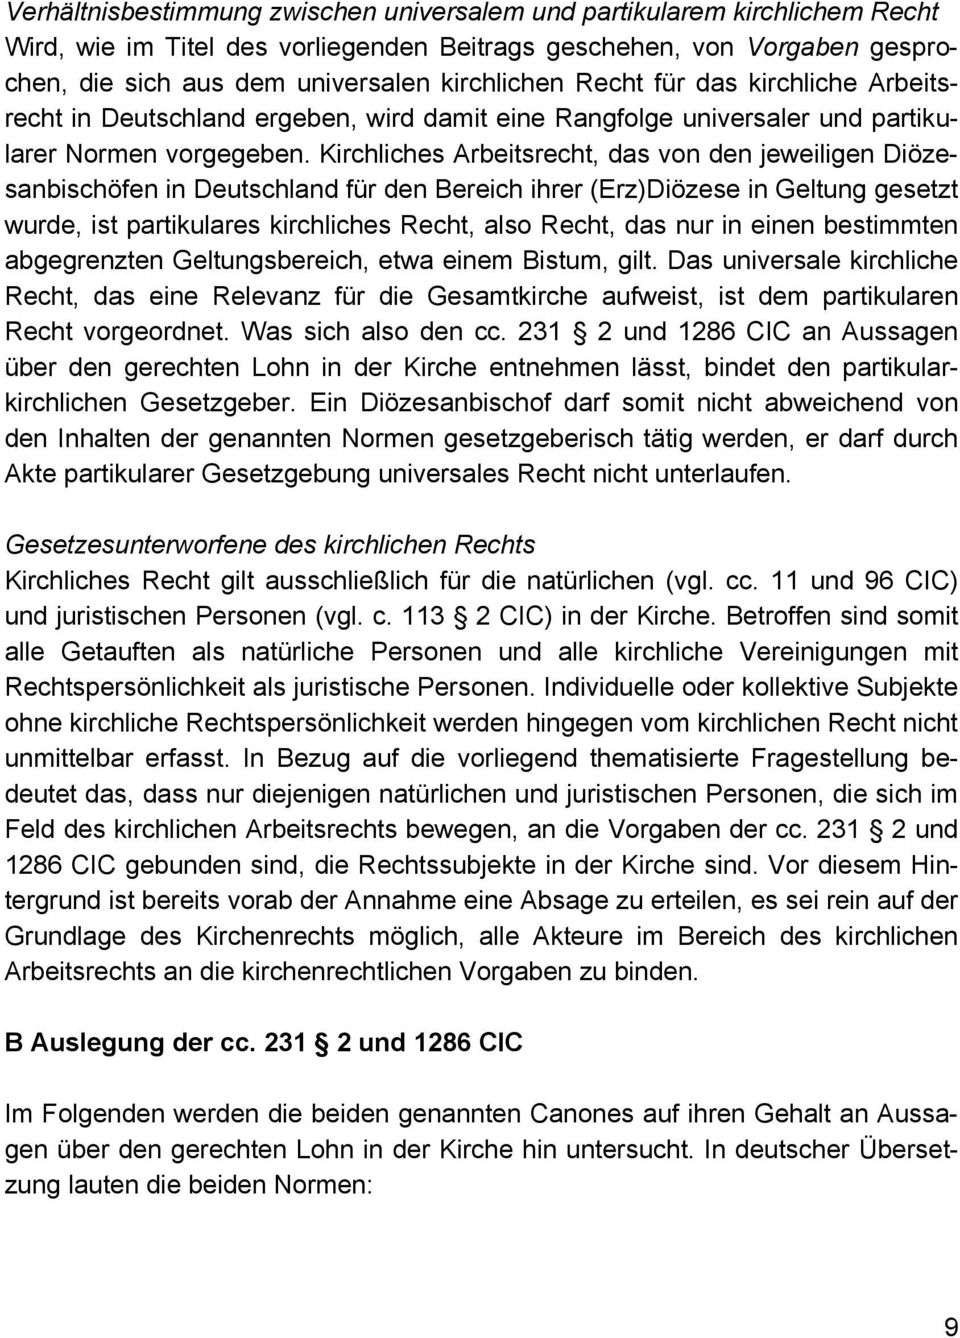 Kirchliches Arbeitsrecht, das von den jeweiligen Diözesanbischöfen in Deutschland für den Bereich ihrer (Erz)Diözese in Geltung gesetzt wurde, ist partikulares kirchliches Recht, also Recht, das nur